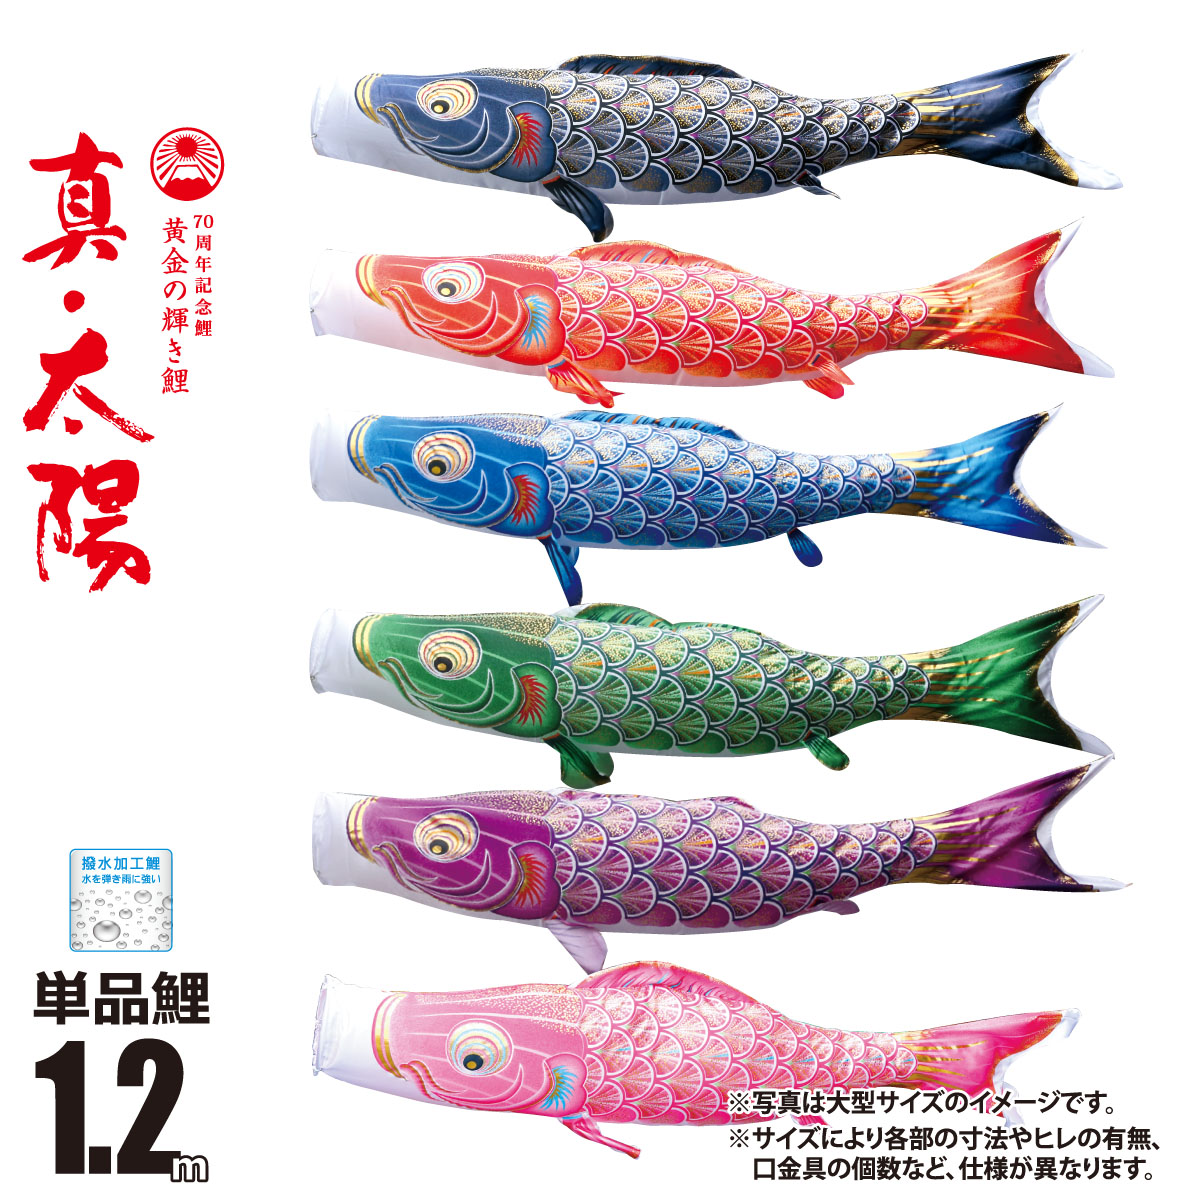 【楽天市場】鯉のぼり 単品 一匹単位真 太陽 単品鯉のぼり 1.2m 口